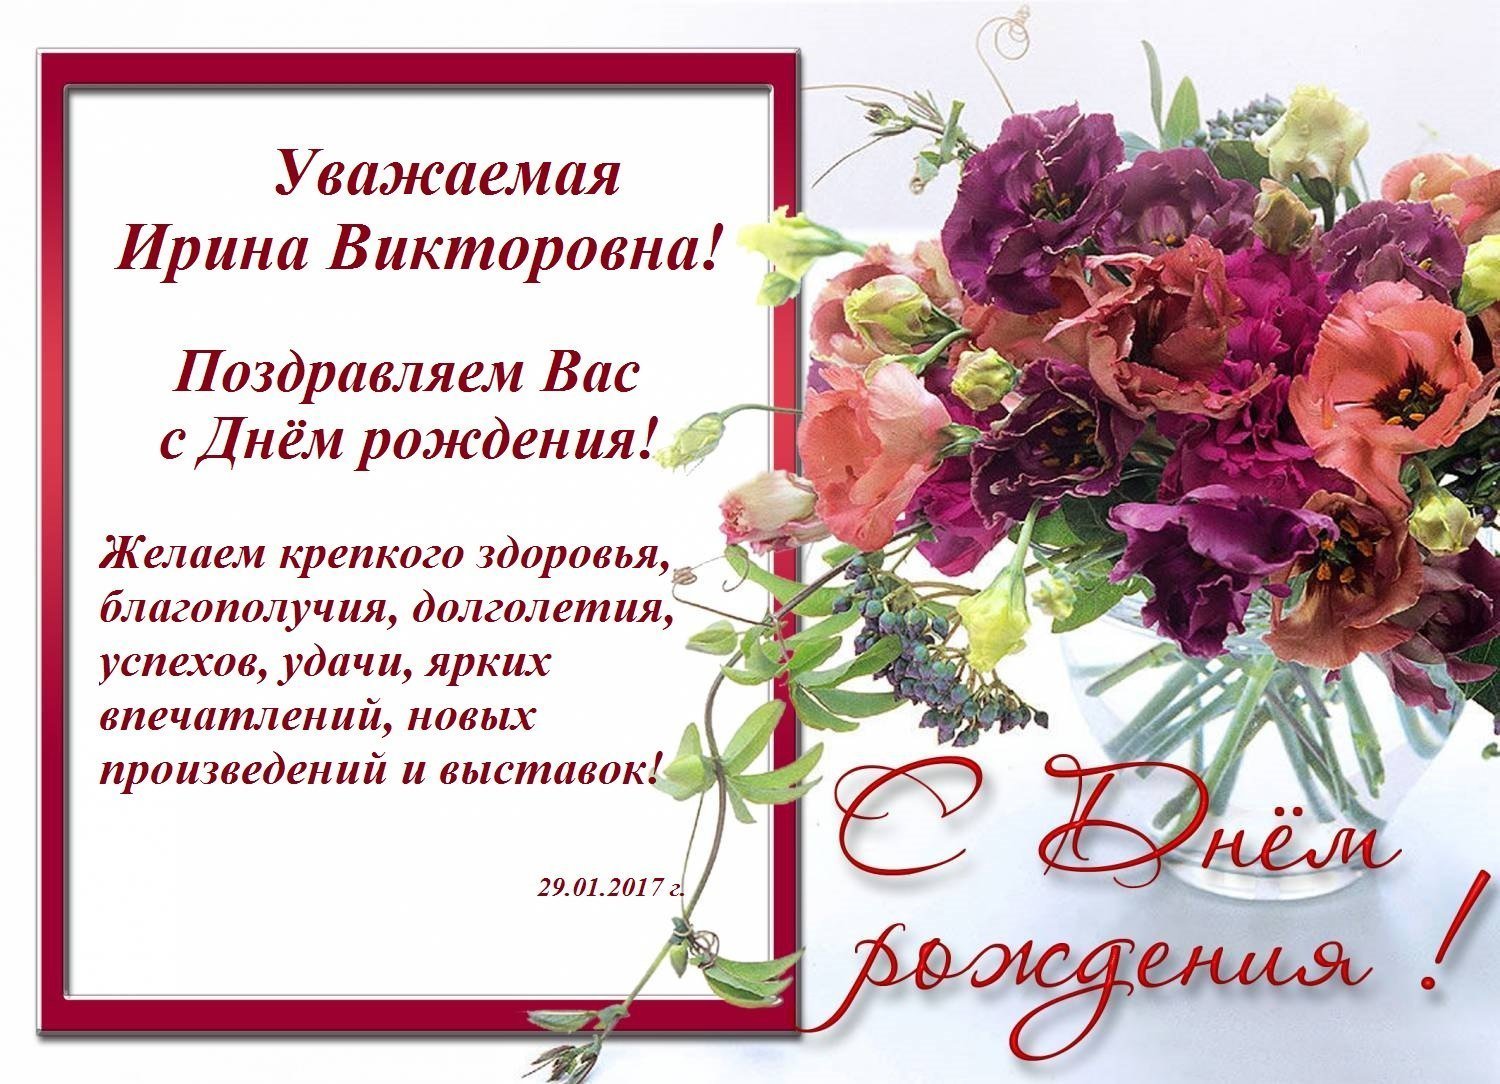 Официальные поздравления с днем рождения мужчине 💐 – бесплатные пожелания на Pozdravim